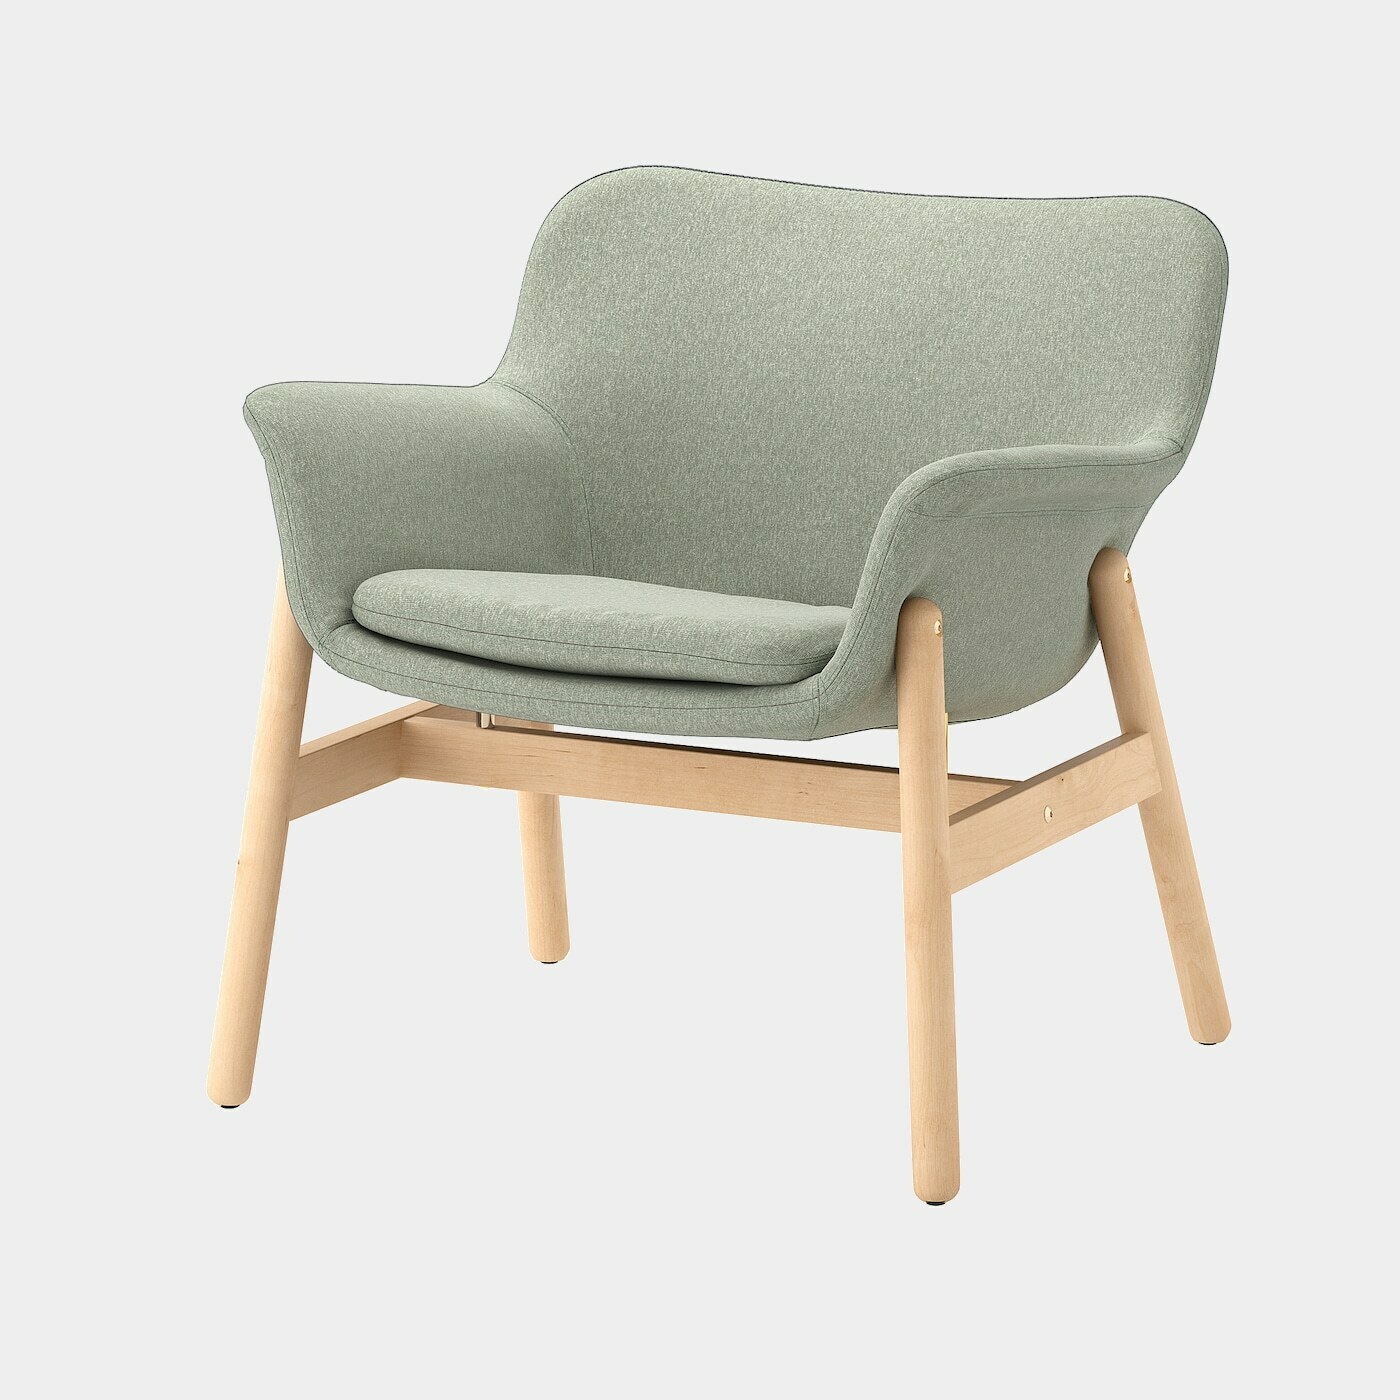 VEDBO Sessel  -  - Möbel Ideen für dein Zuhause von Home Trends. Möbel Trends von Social Media Influencer für dein Skandi Zuhause.